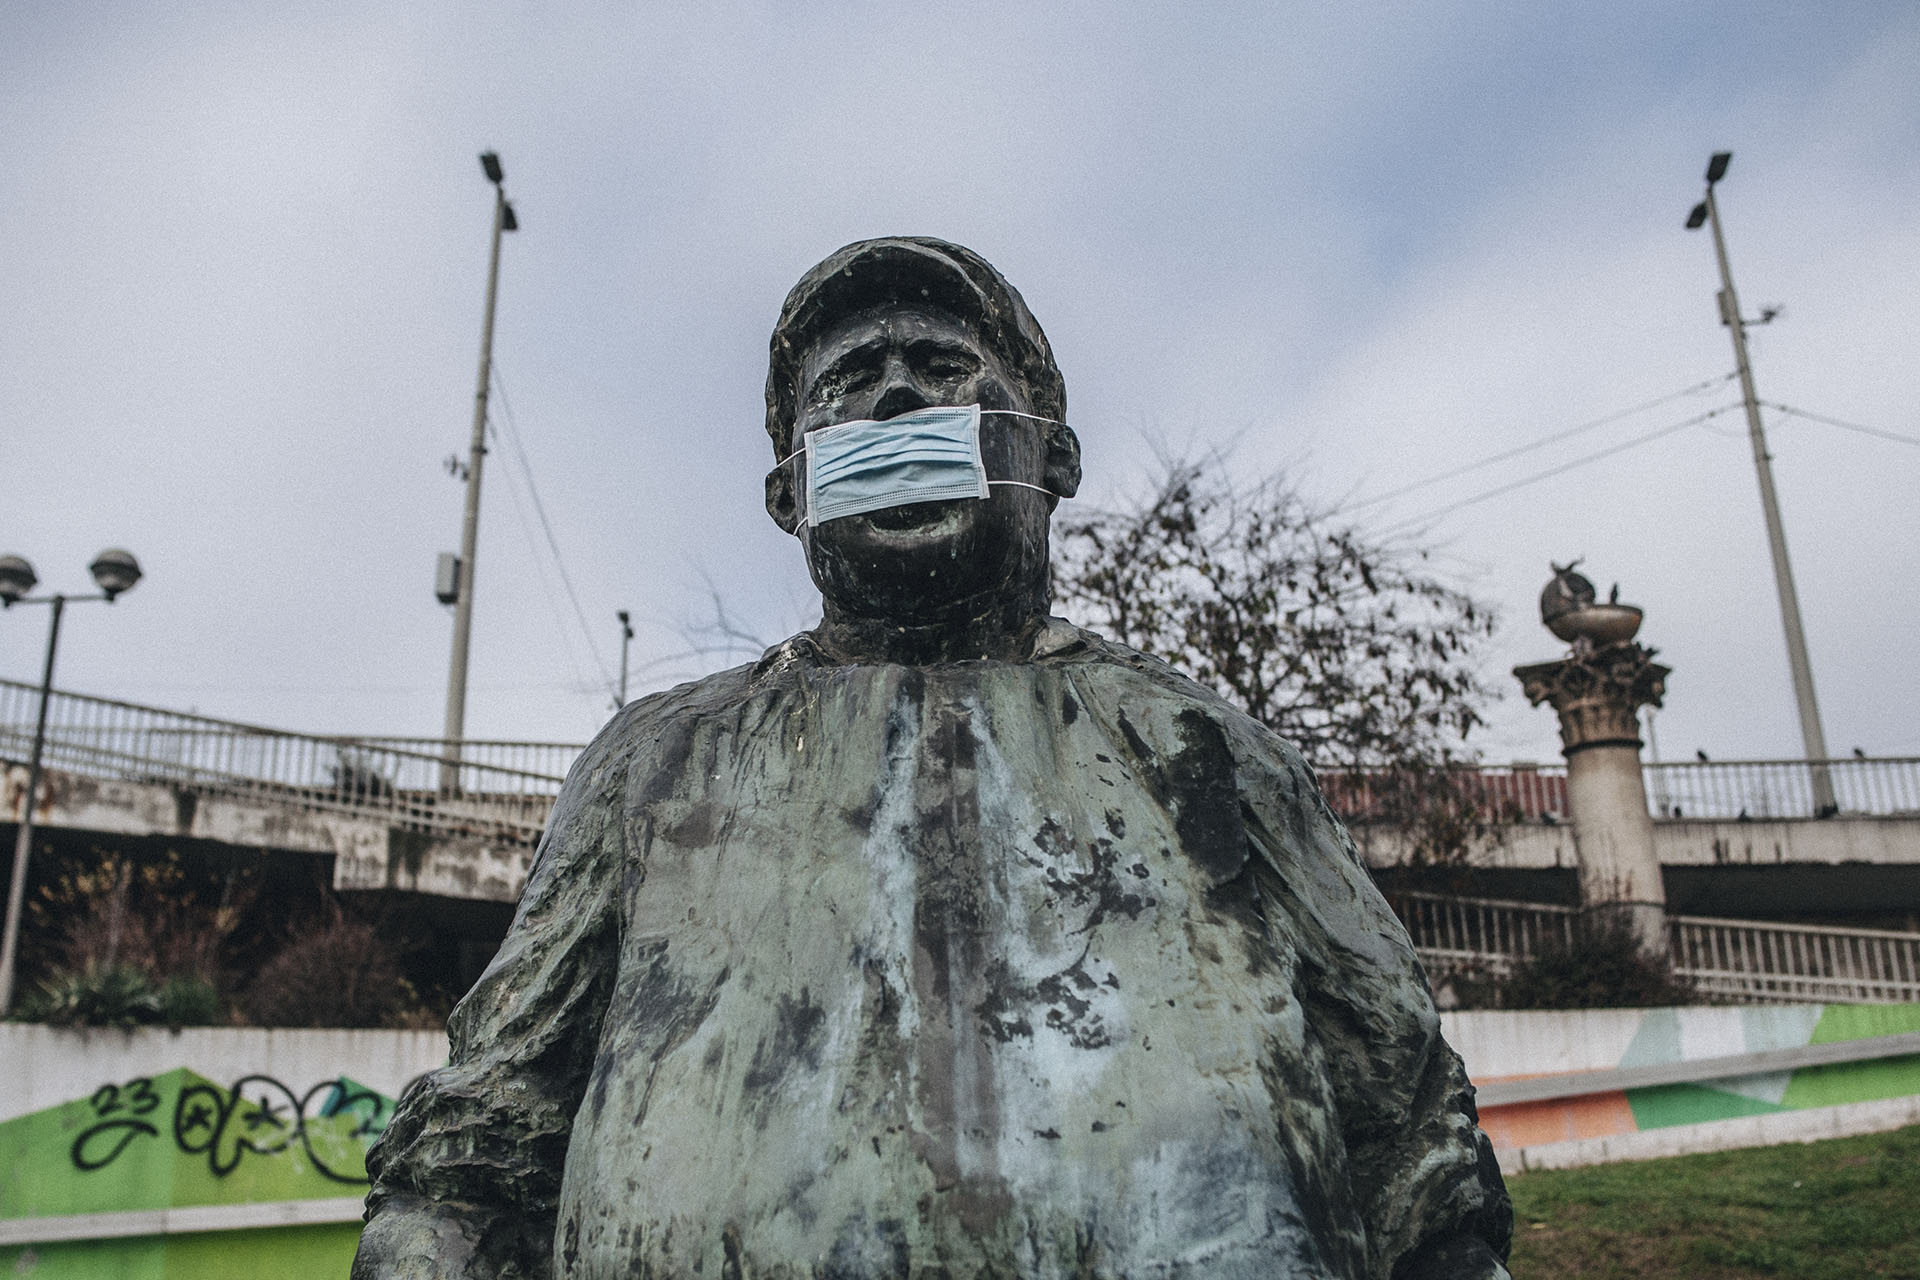 Elkezdtek maszkot hordani a járványtagadók, hogy az oltottaktól védjék magukat